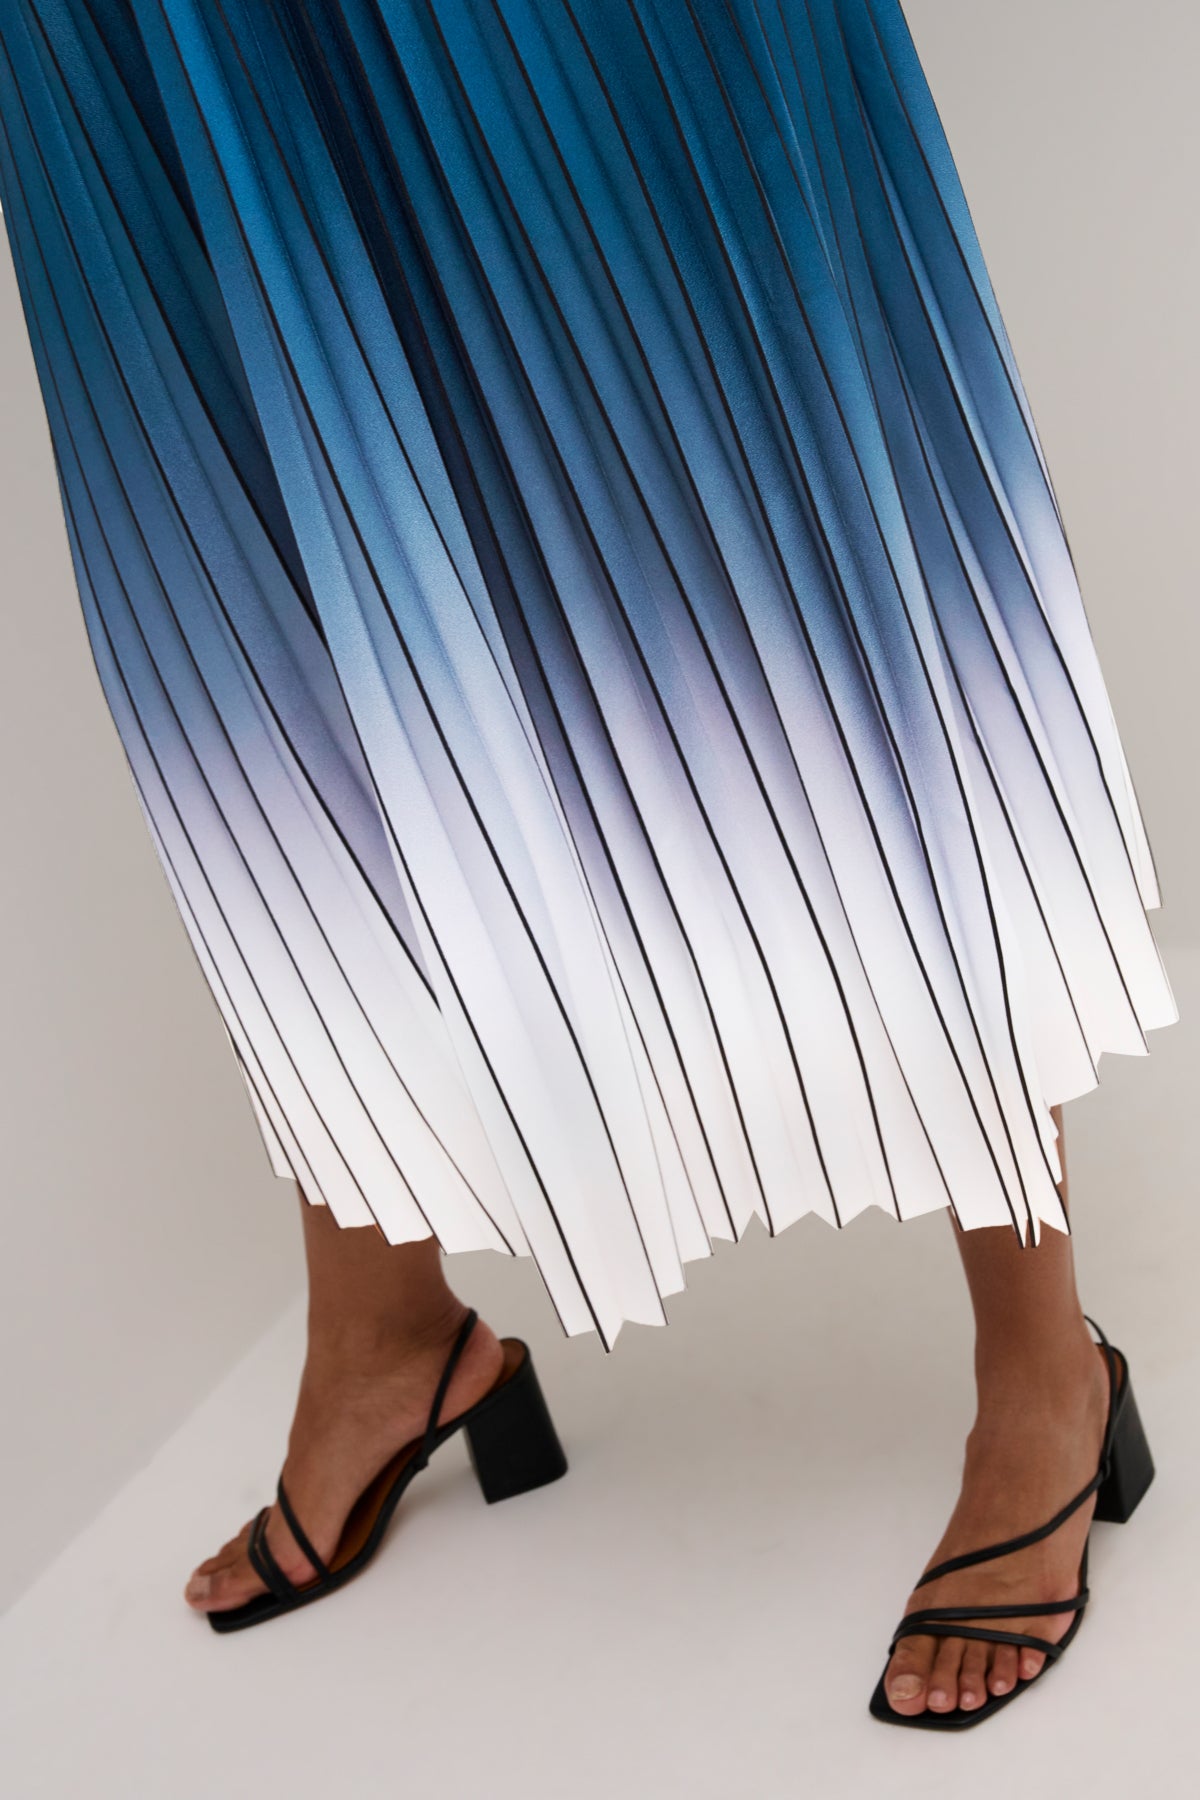 Scarlett Ombre Skirt in Dress Blues